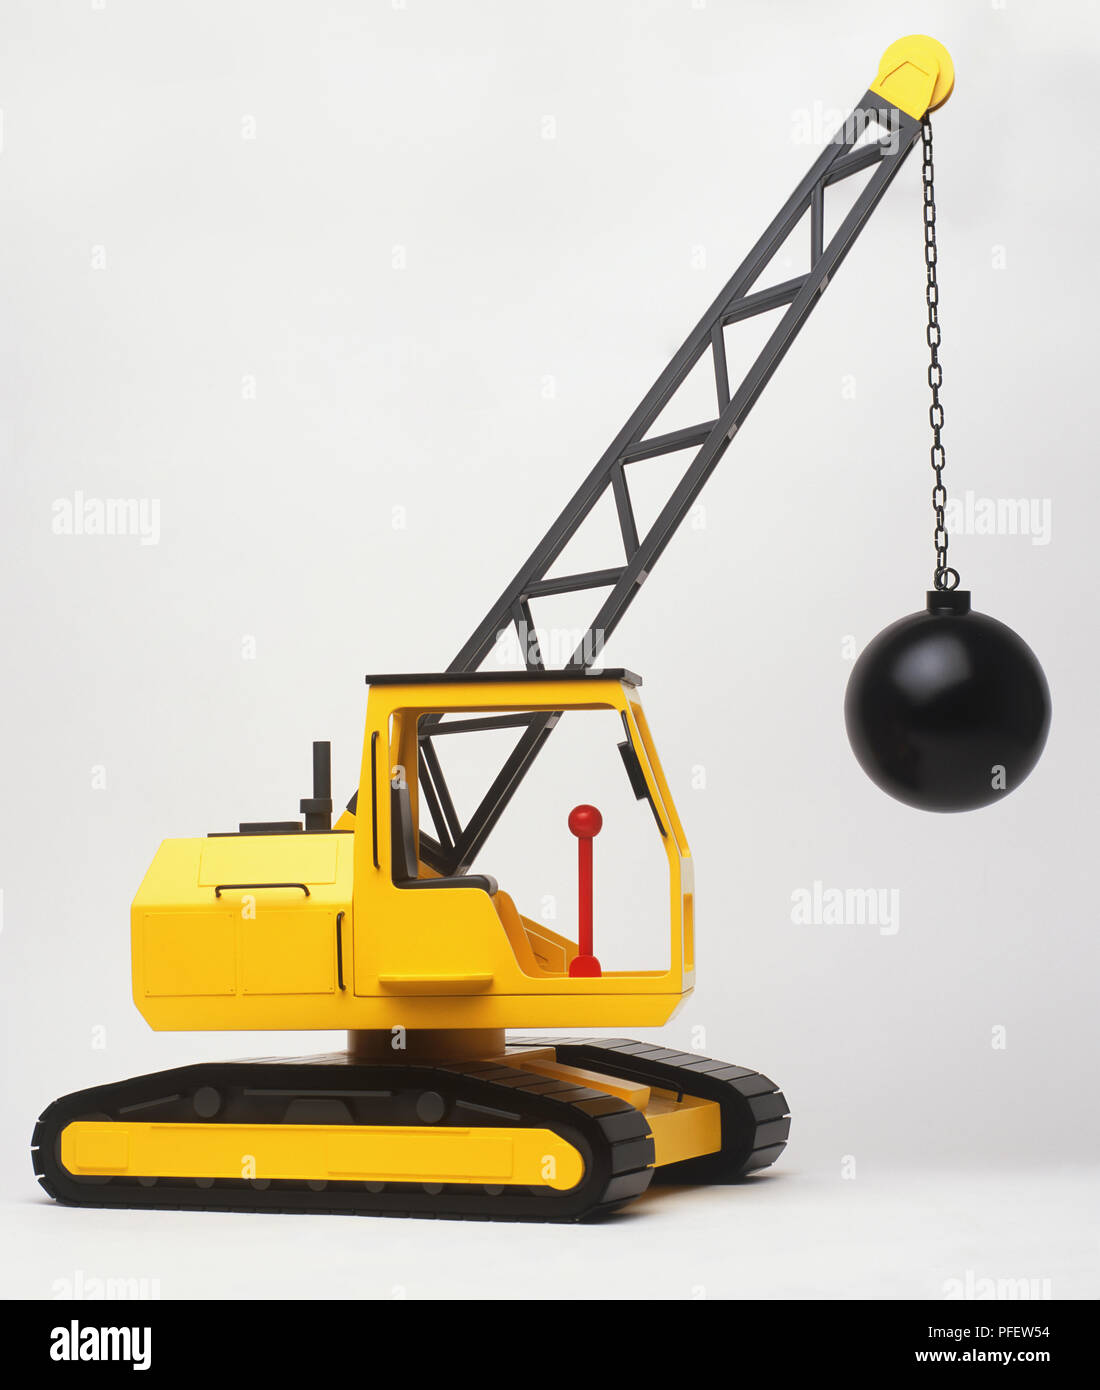 Grue jouet avec une boule de démolition qui pendait au bras Photo Stock -  Alamy